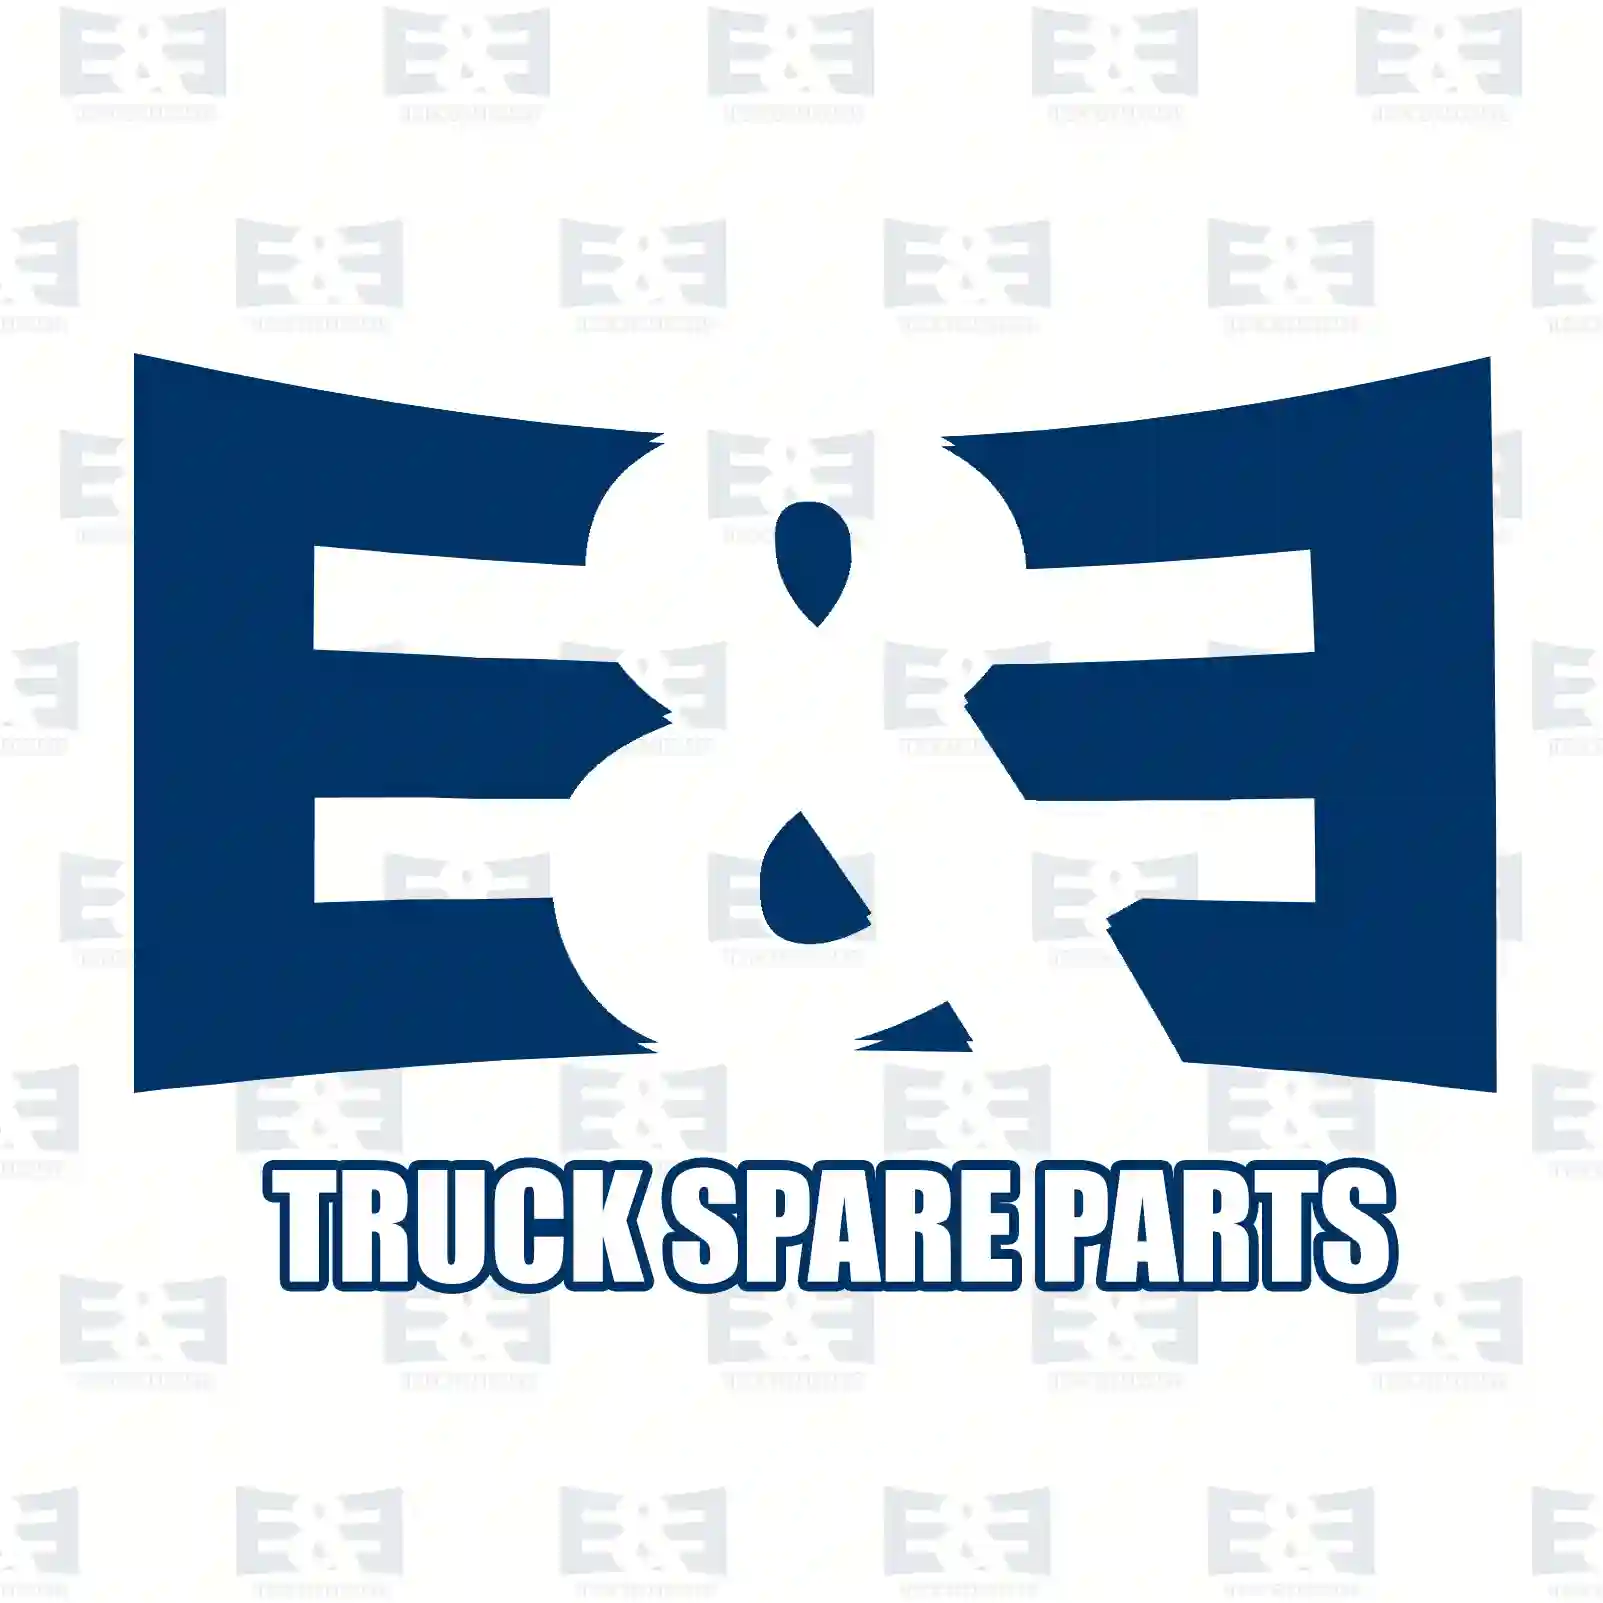 Steering lock, 2E2205296, 5010232097, 20580046, 21035786 ||  2E2205296 E&E Truck Spare Parts | Truck Spare Parts, Auotomotive Spare Parts Steering lock, 2E2205296, 5010232097, 20580046, 21035786 ||  2E2205296 E&E Truck Spare Parts | Truck Spare Parts, Auotomotive Spare Parts